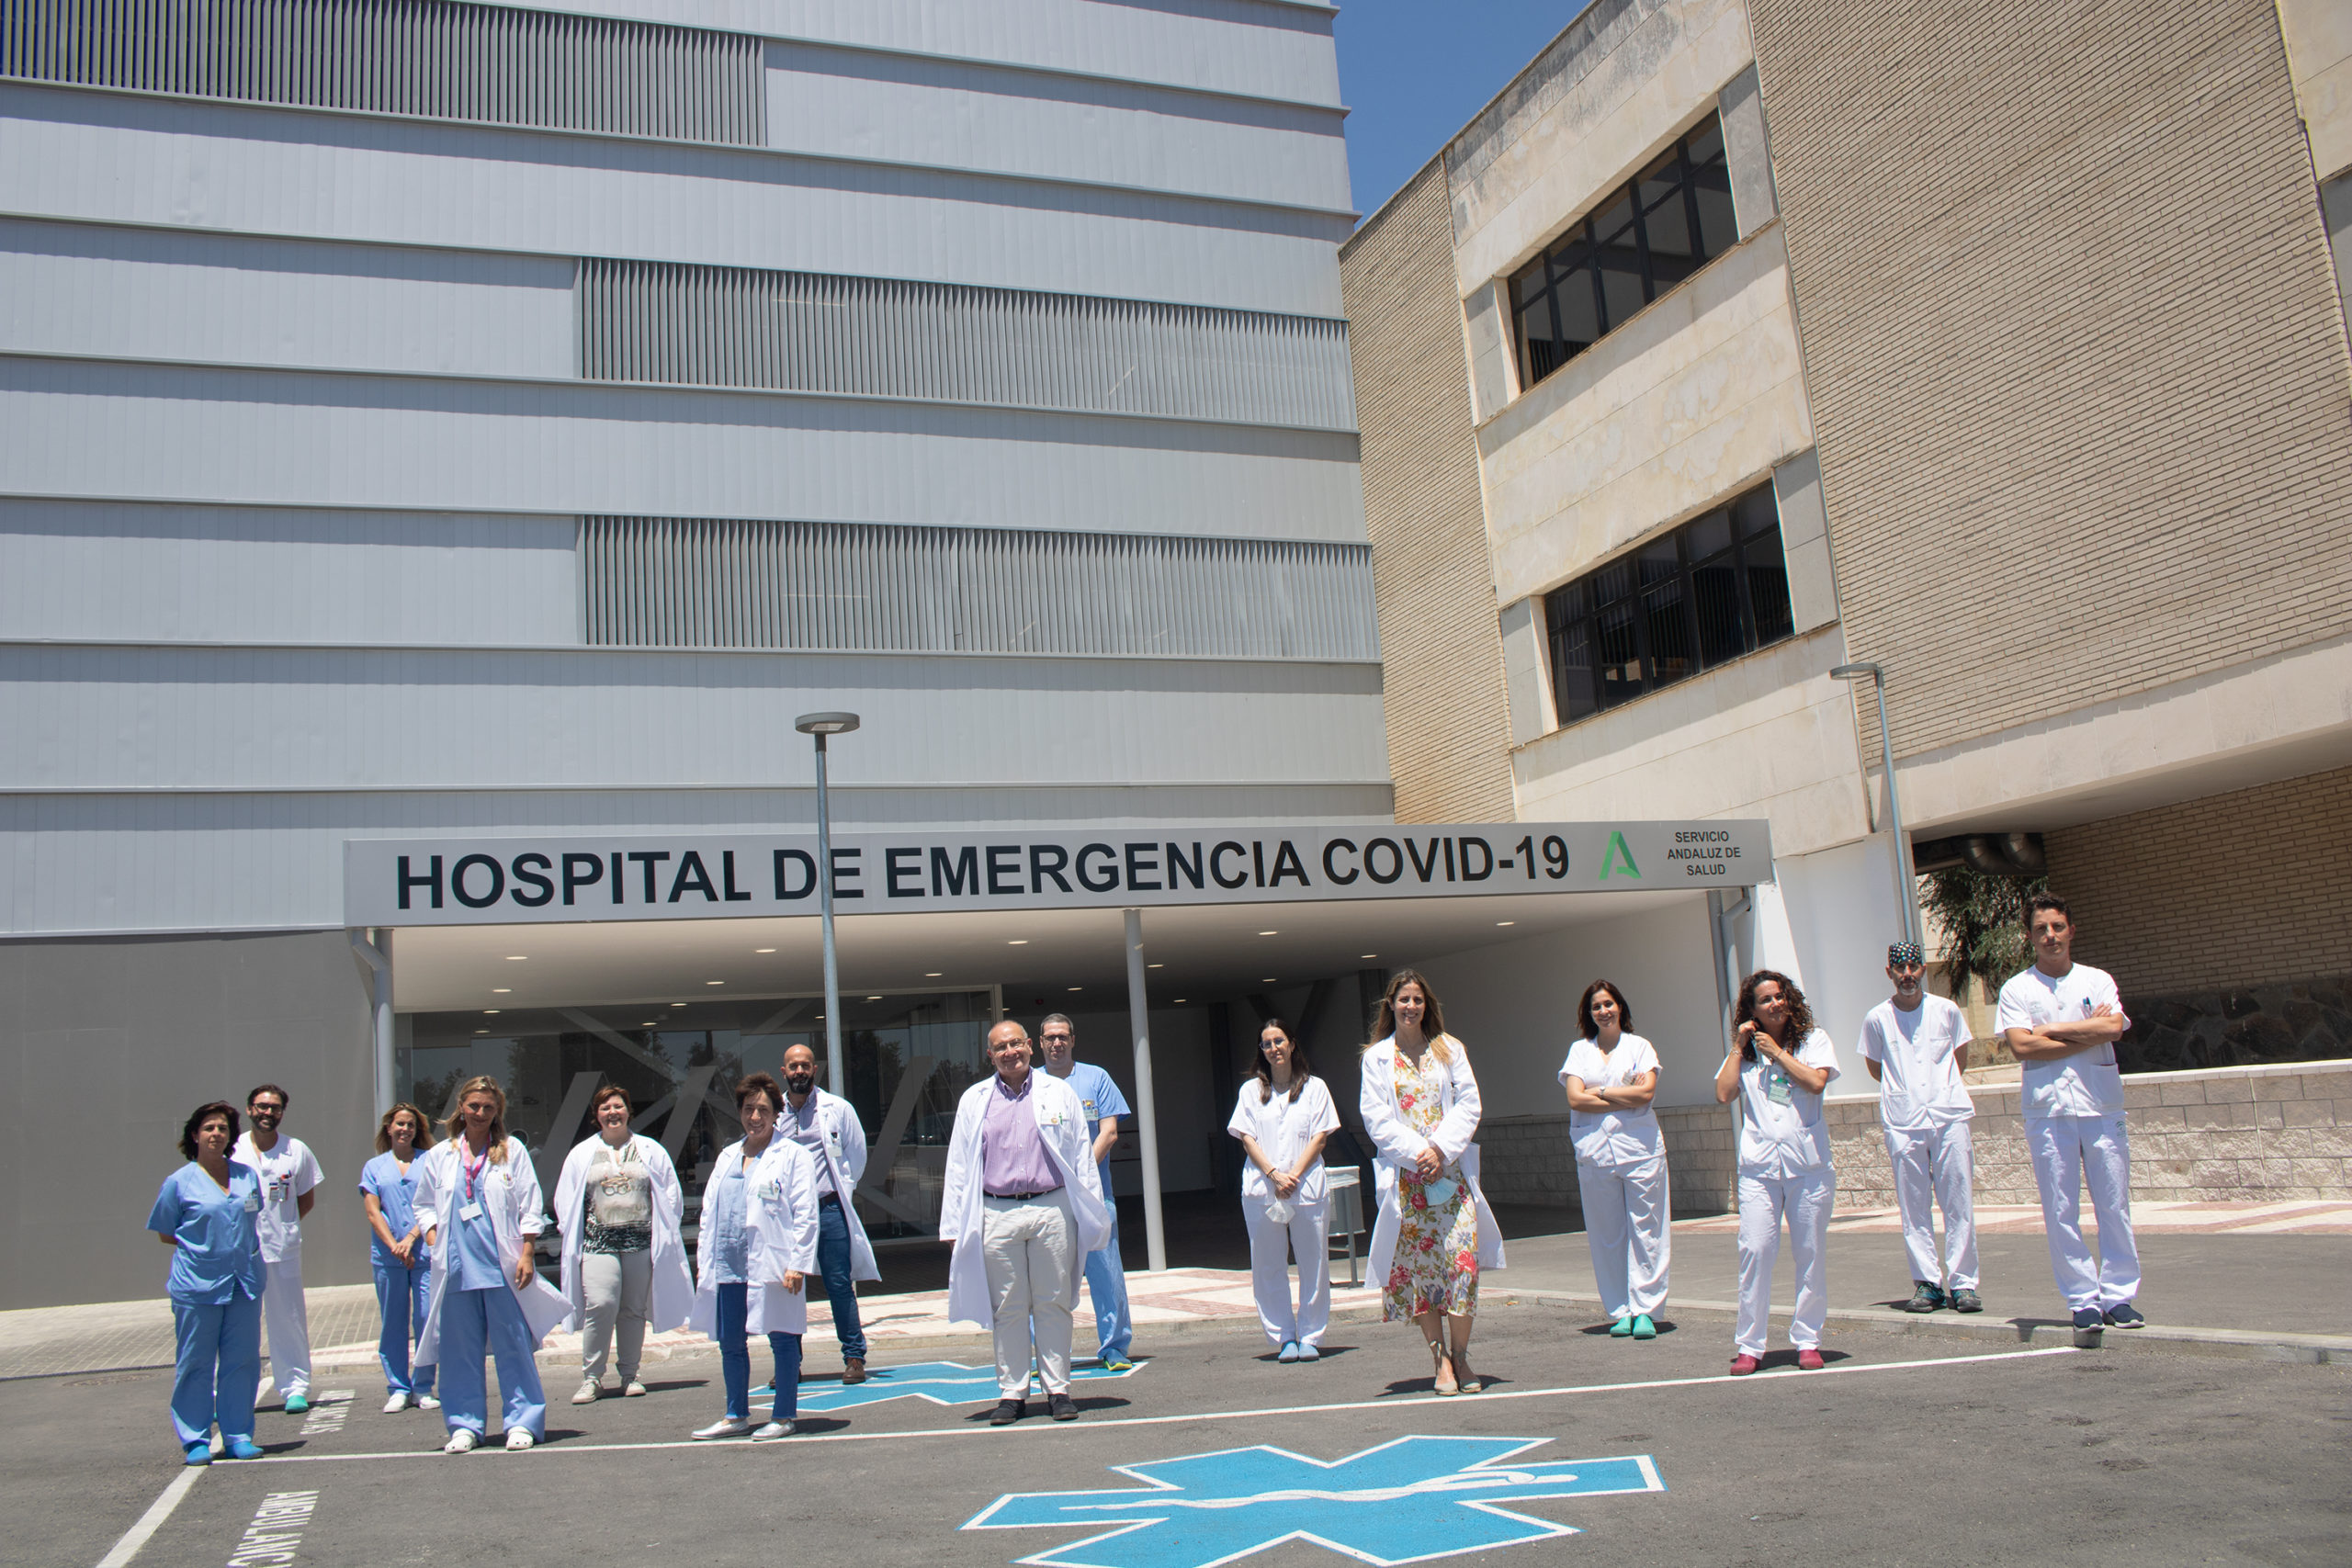 Imagen de los profesionales del Hospital de Emergencia Covid-19